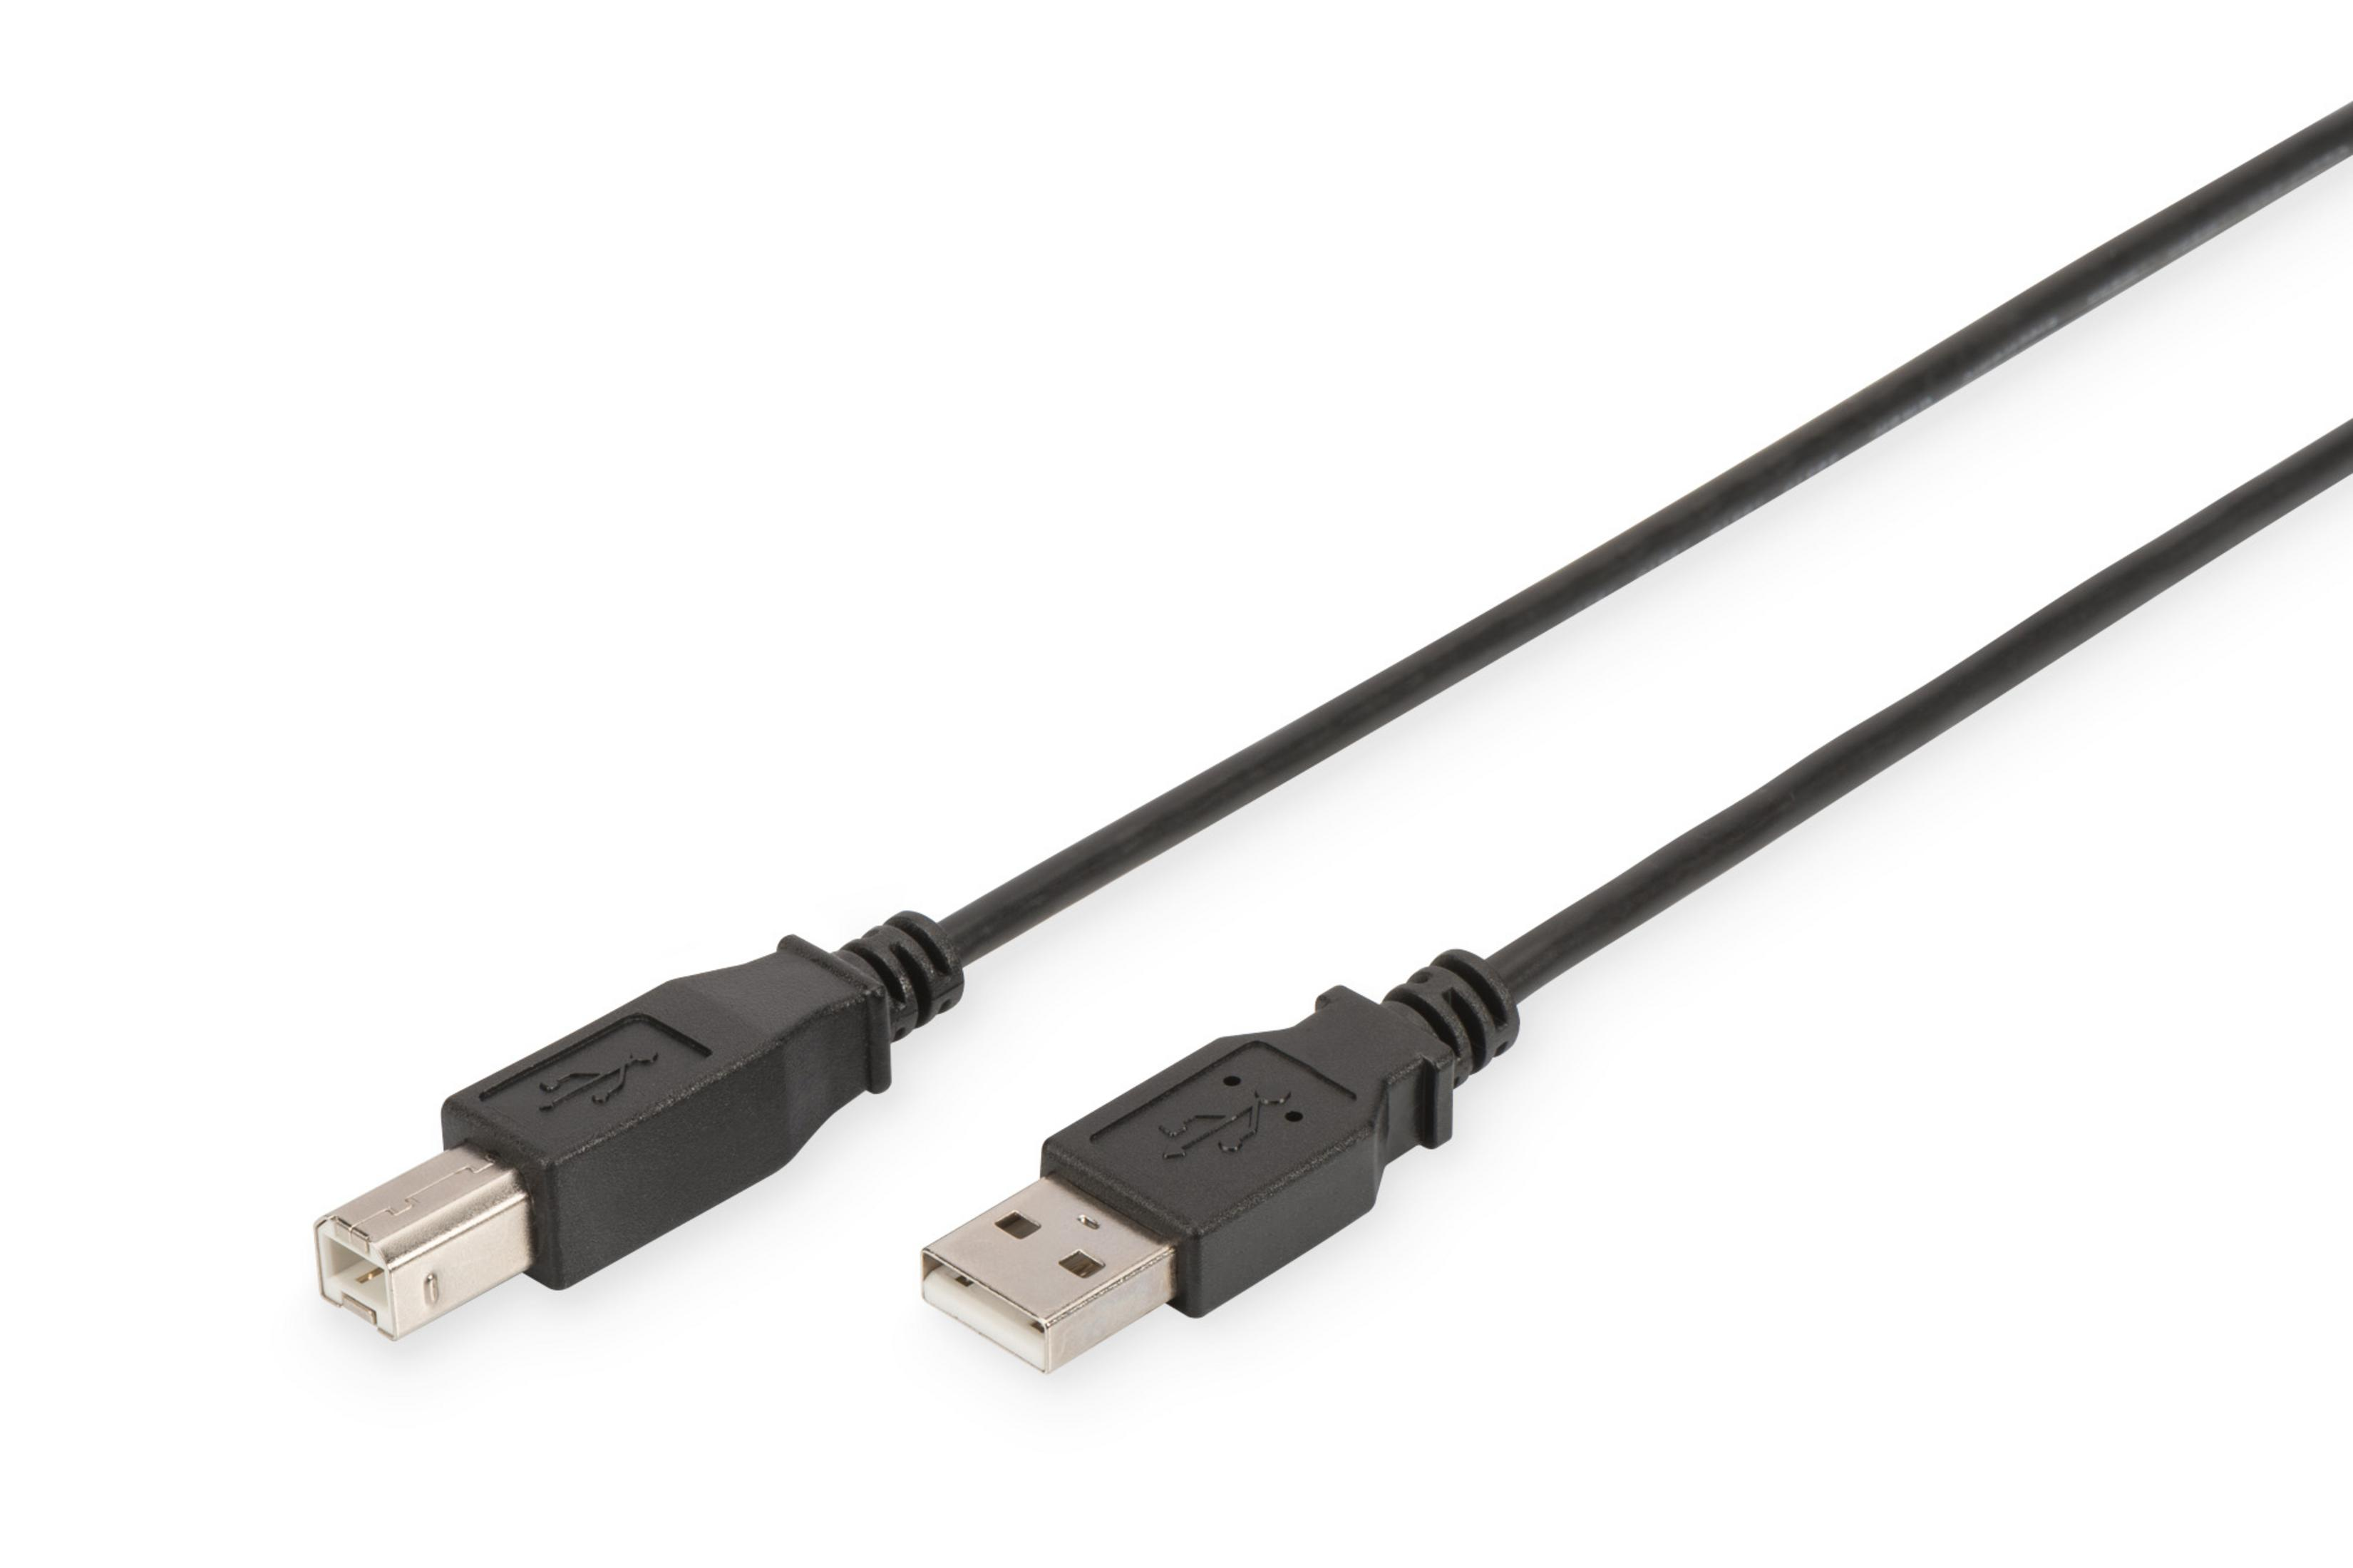 ANSCHLUSSKABEL USB 2.0 DIGITUS AK-300105-018-S USB-Kabel